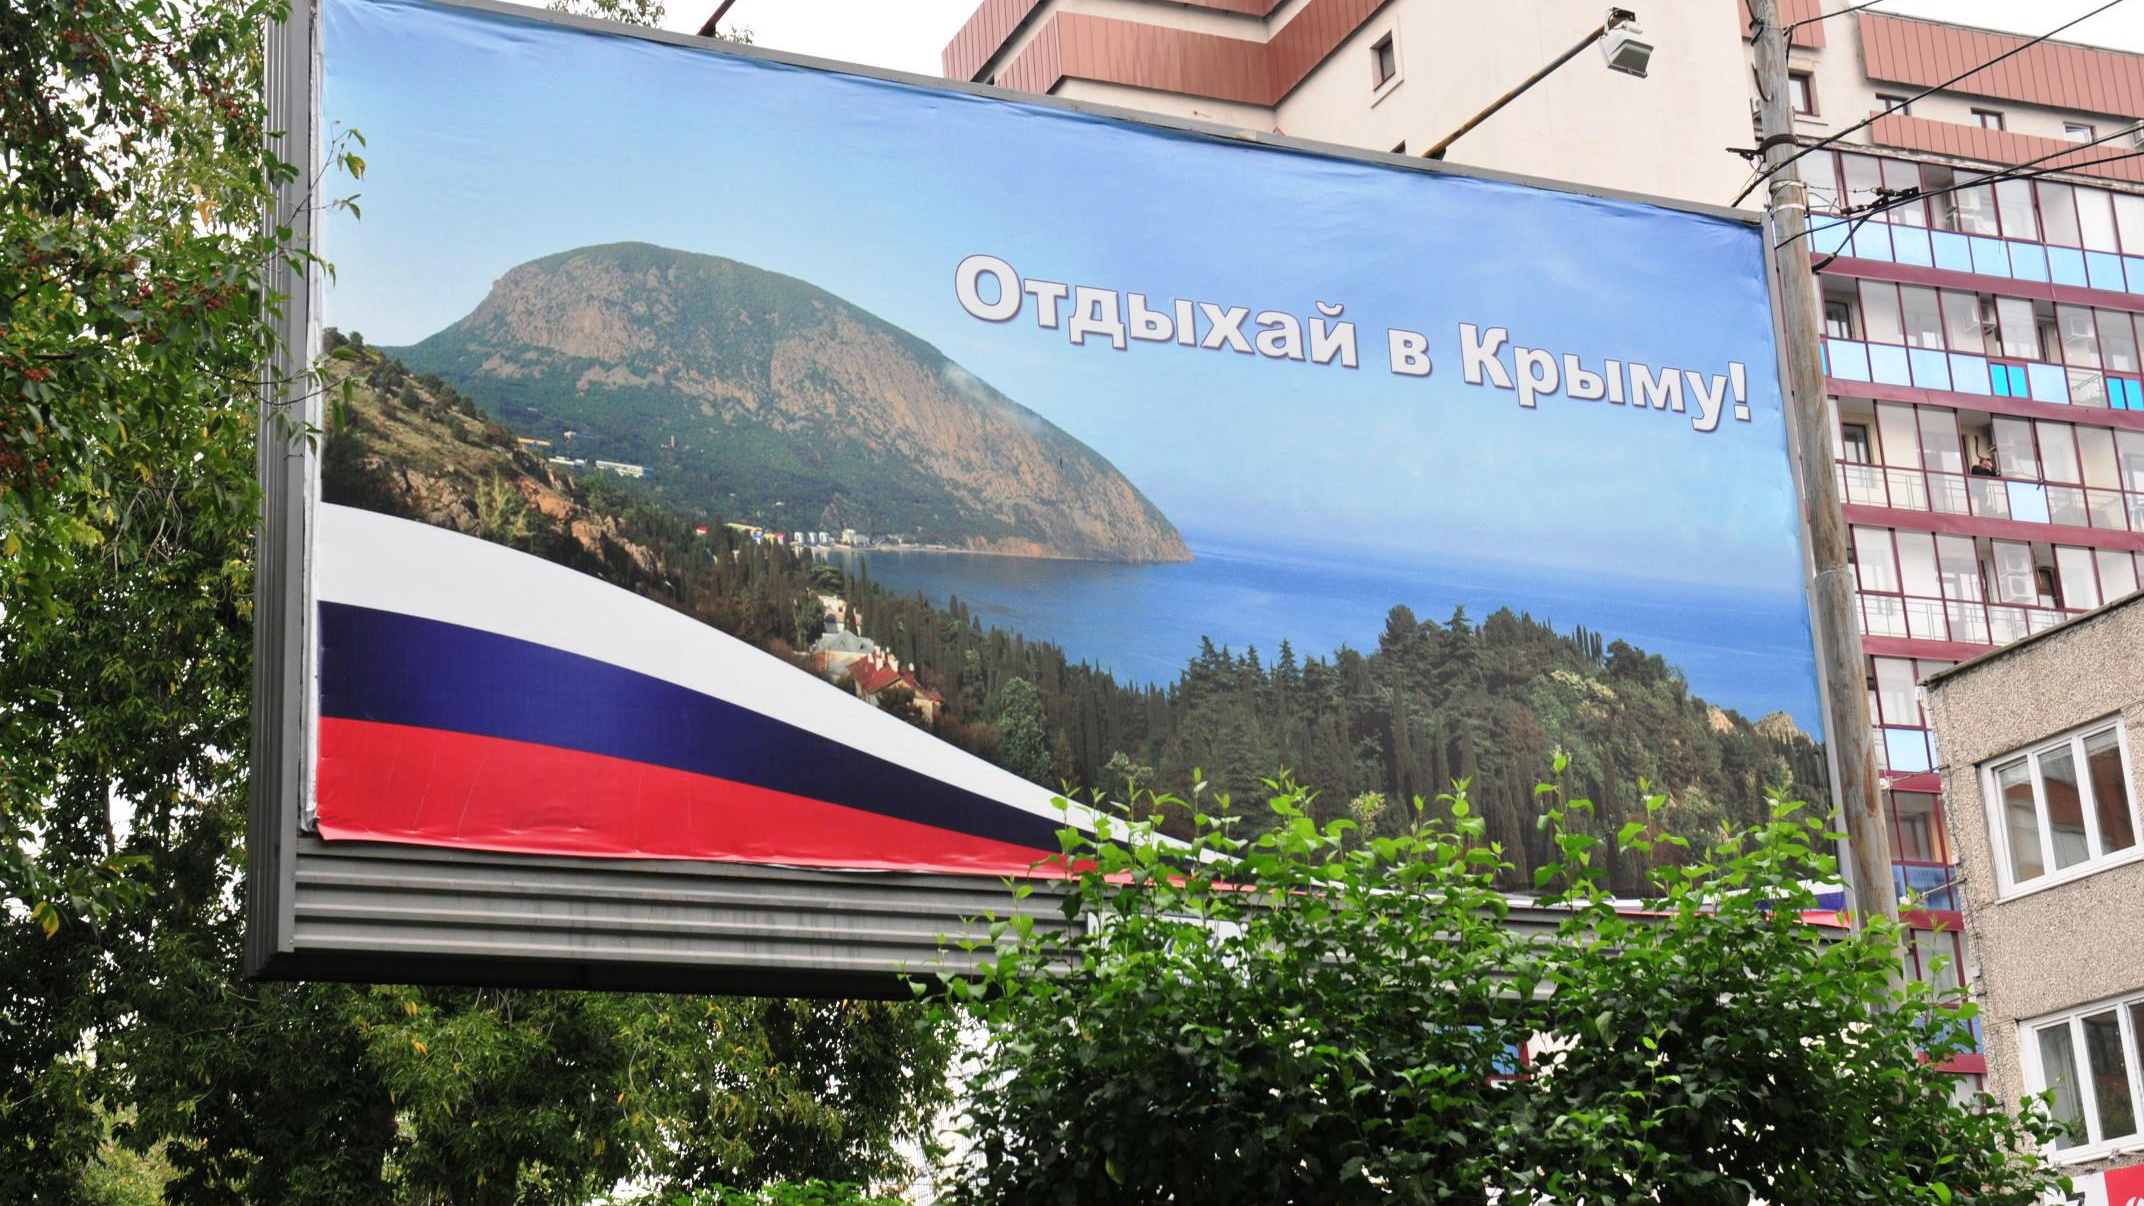 Крым каждый день бьет рекорды по COVID-19 и ужесточает ограничения: что происходит на курортах полуострова